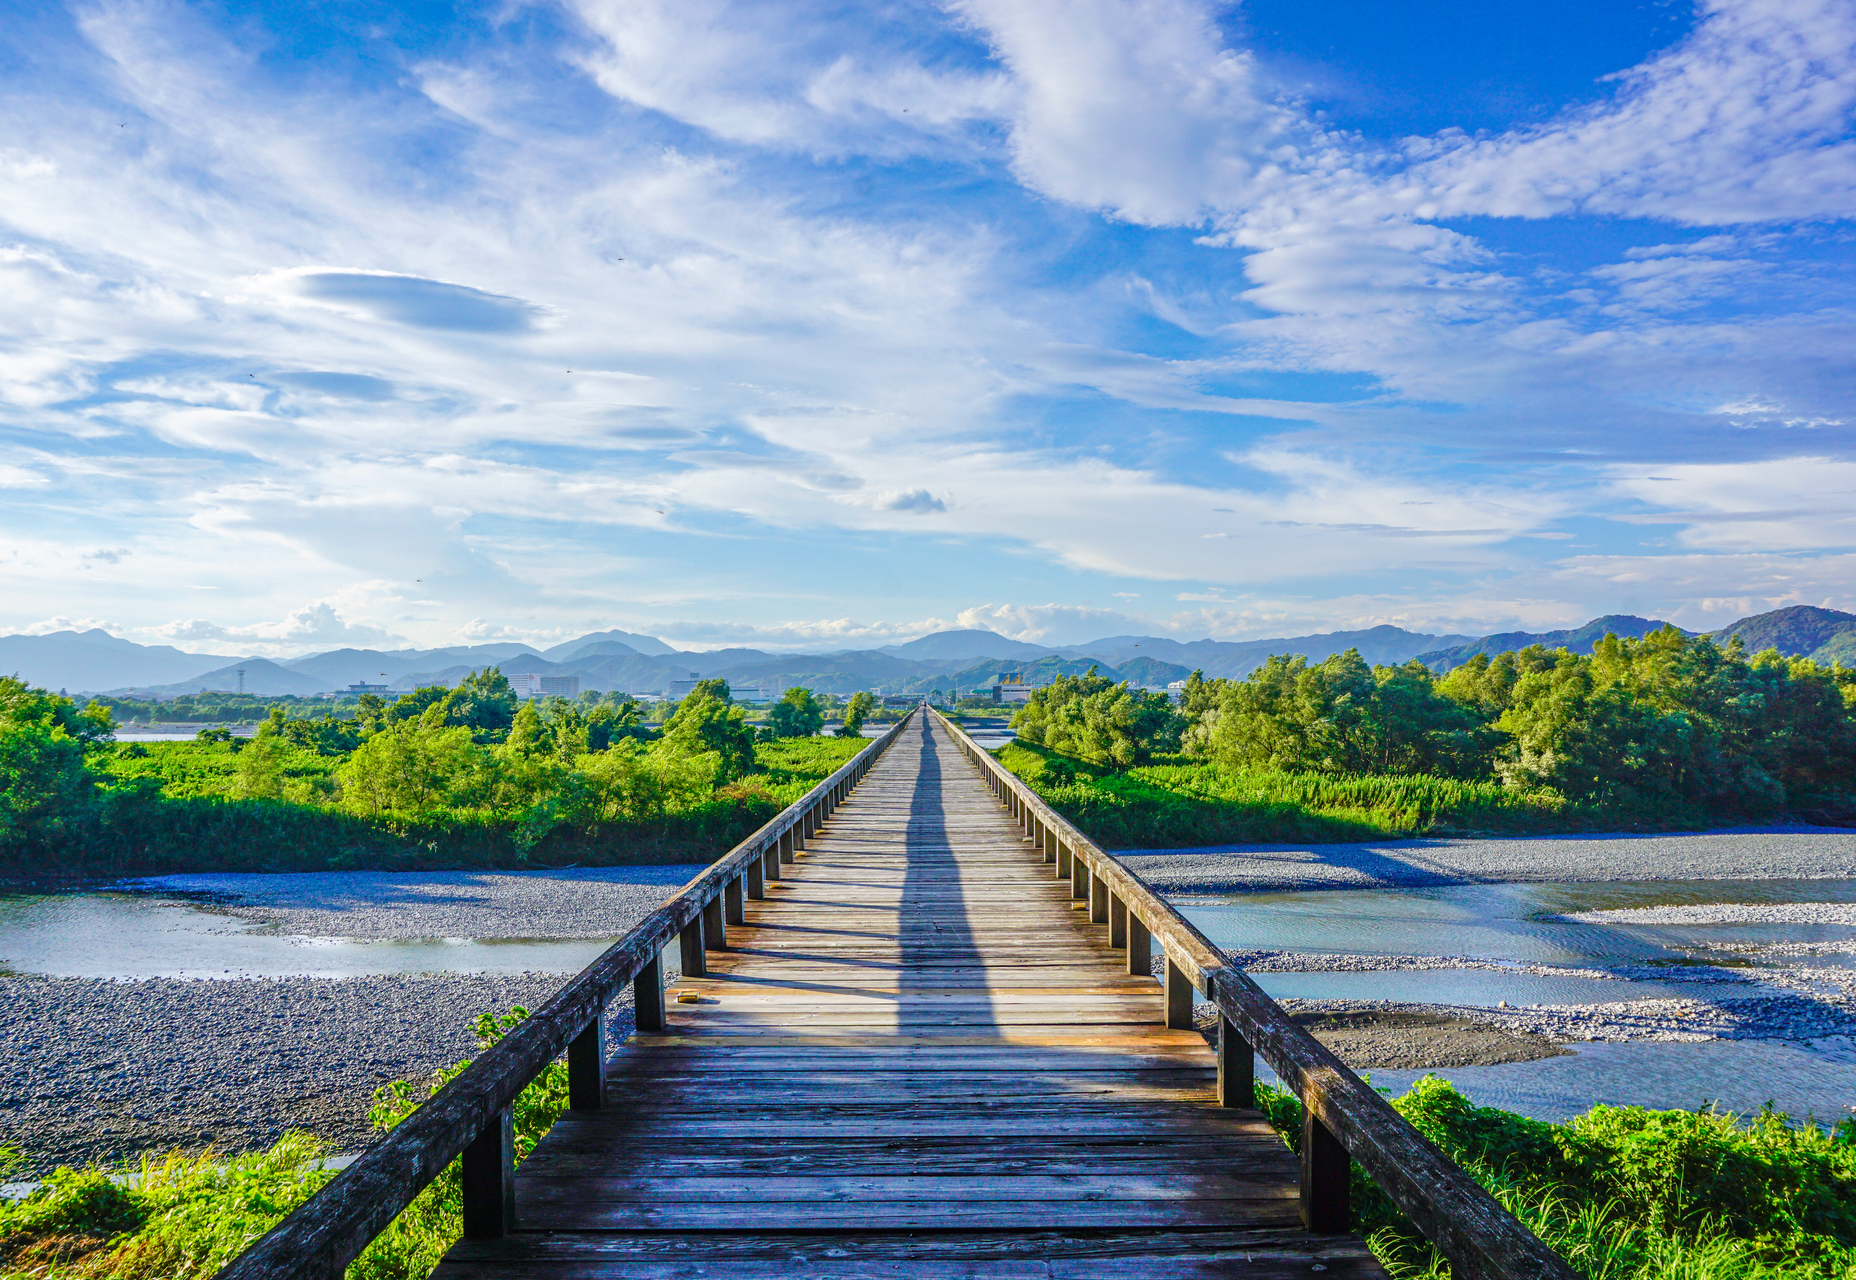 蓬莱橋 世界一長い木造歩道橋 静岡県 について詳しく見る Find 47